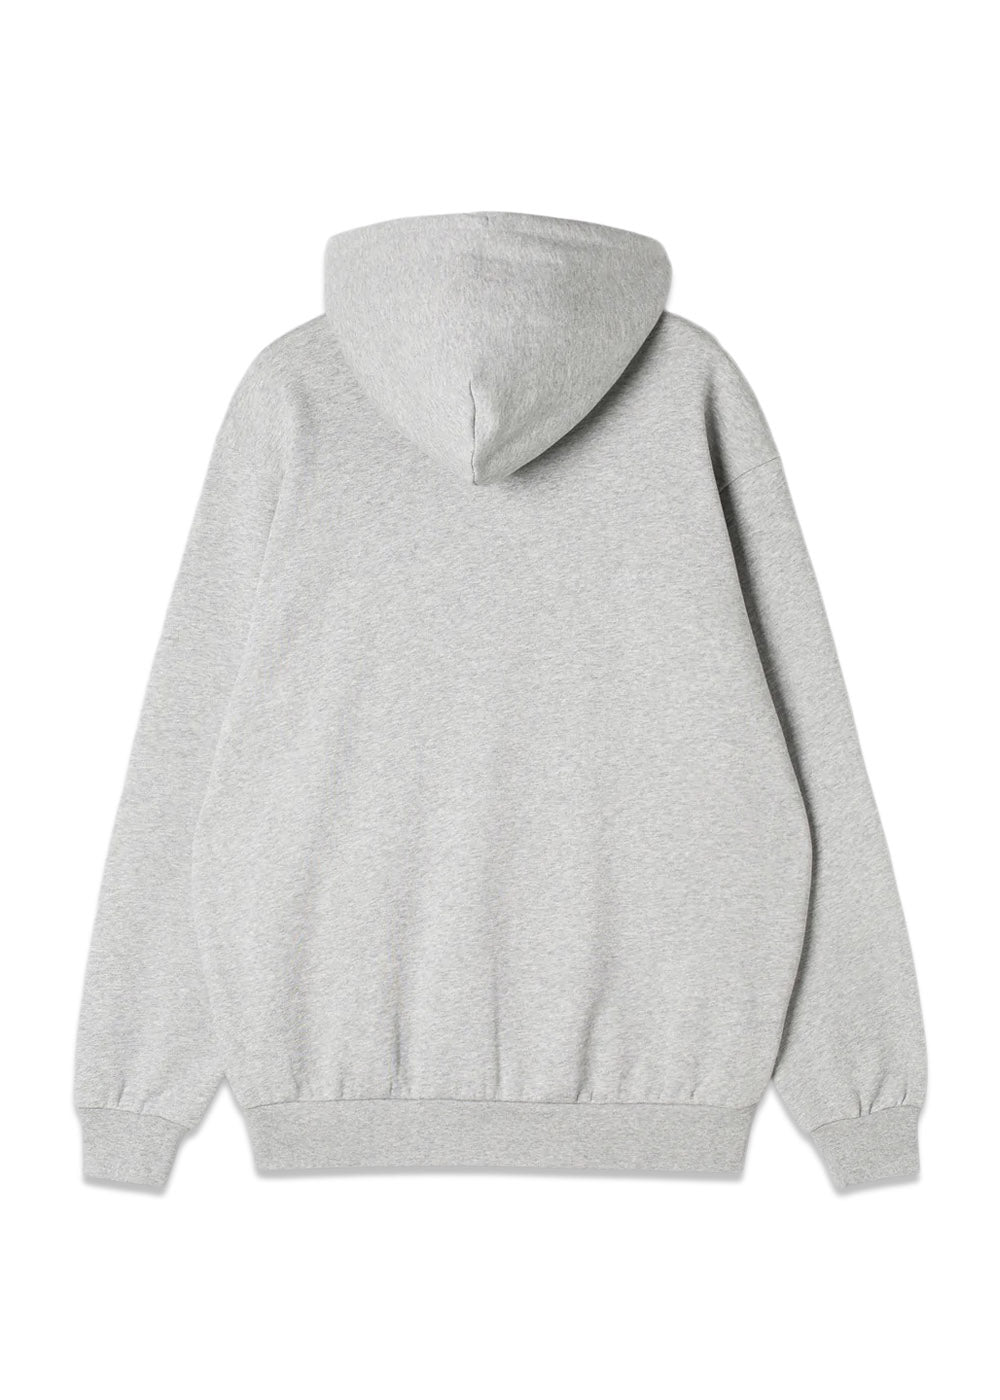 patch zip hood - Grey Heather